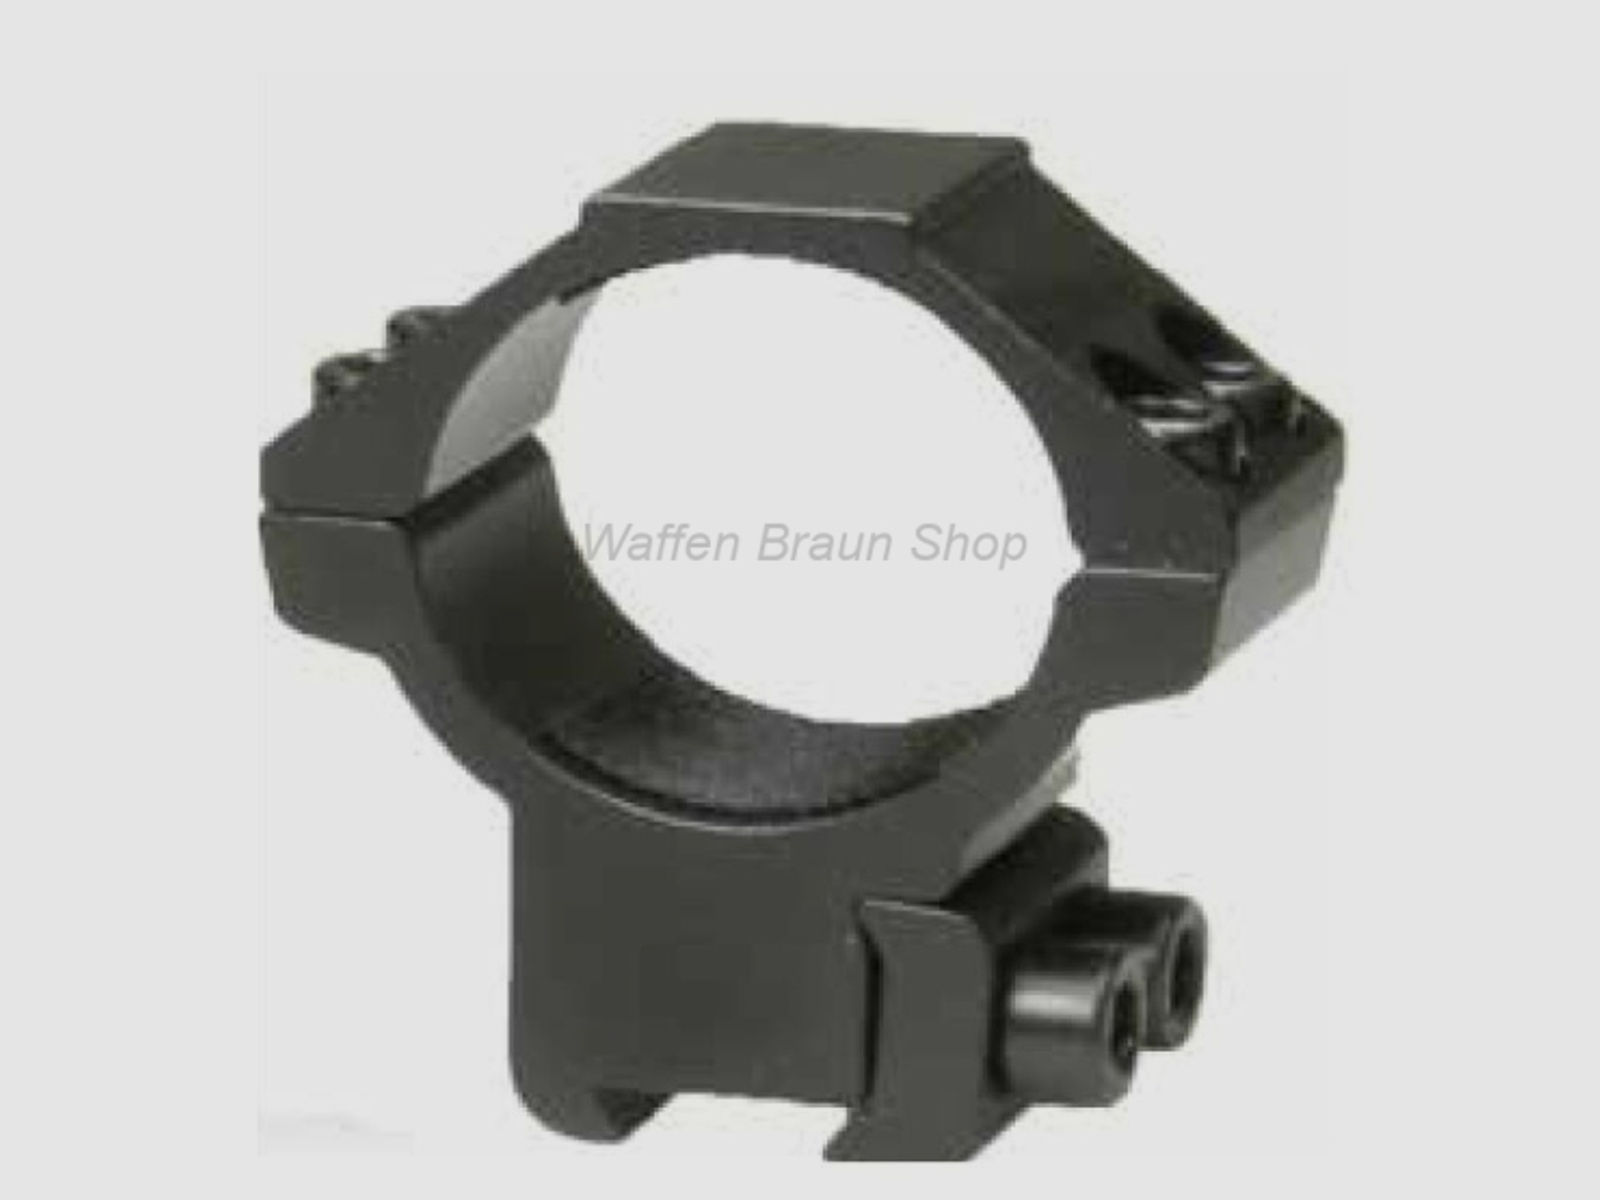 Bauer Ringmontage für 11mm Prismenschiene, Schwarz matt, 30mm, Flach